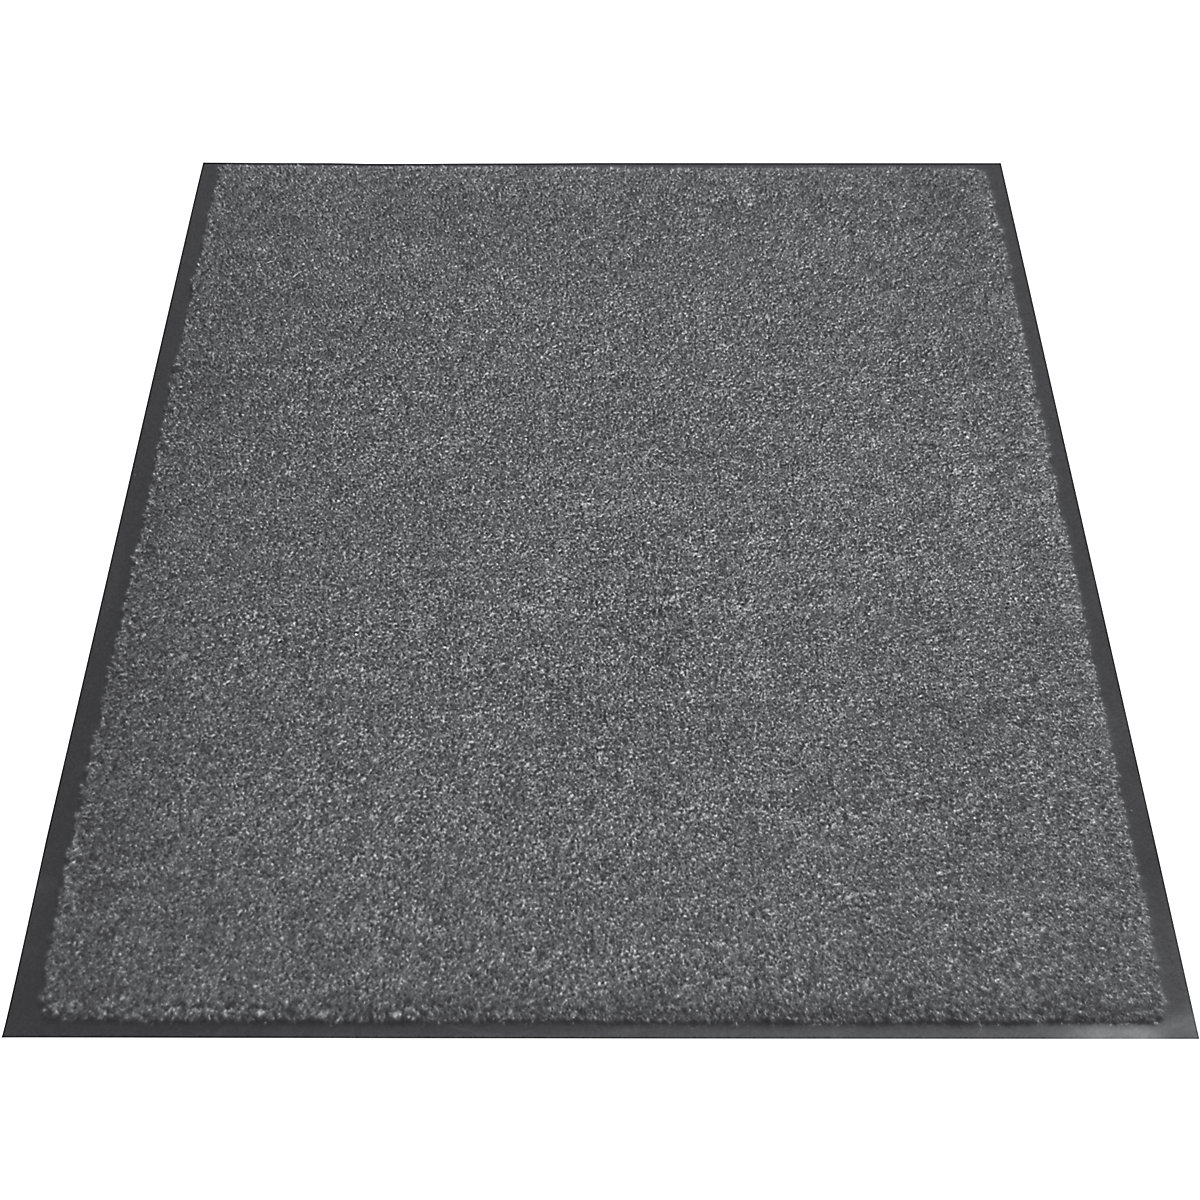 EAZYCARE AQUA entrance matting, LxW 900 x 600 mm, grey